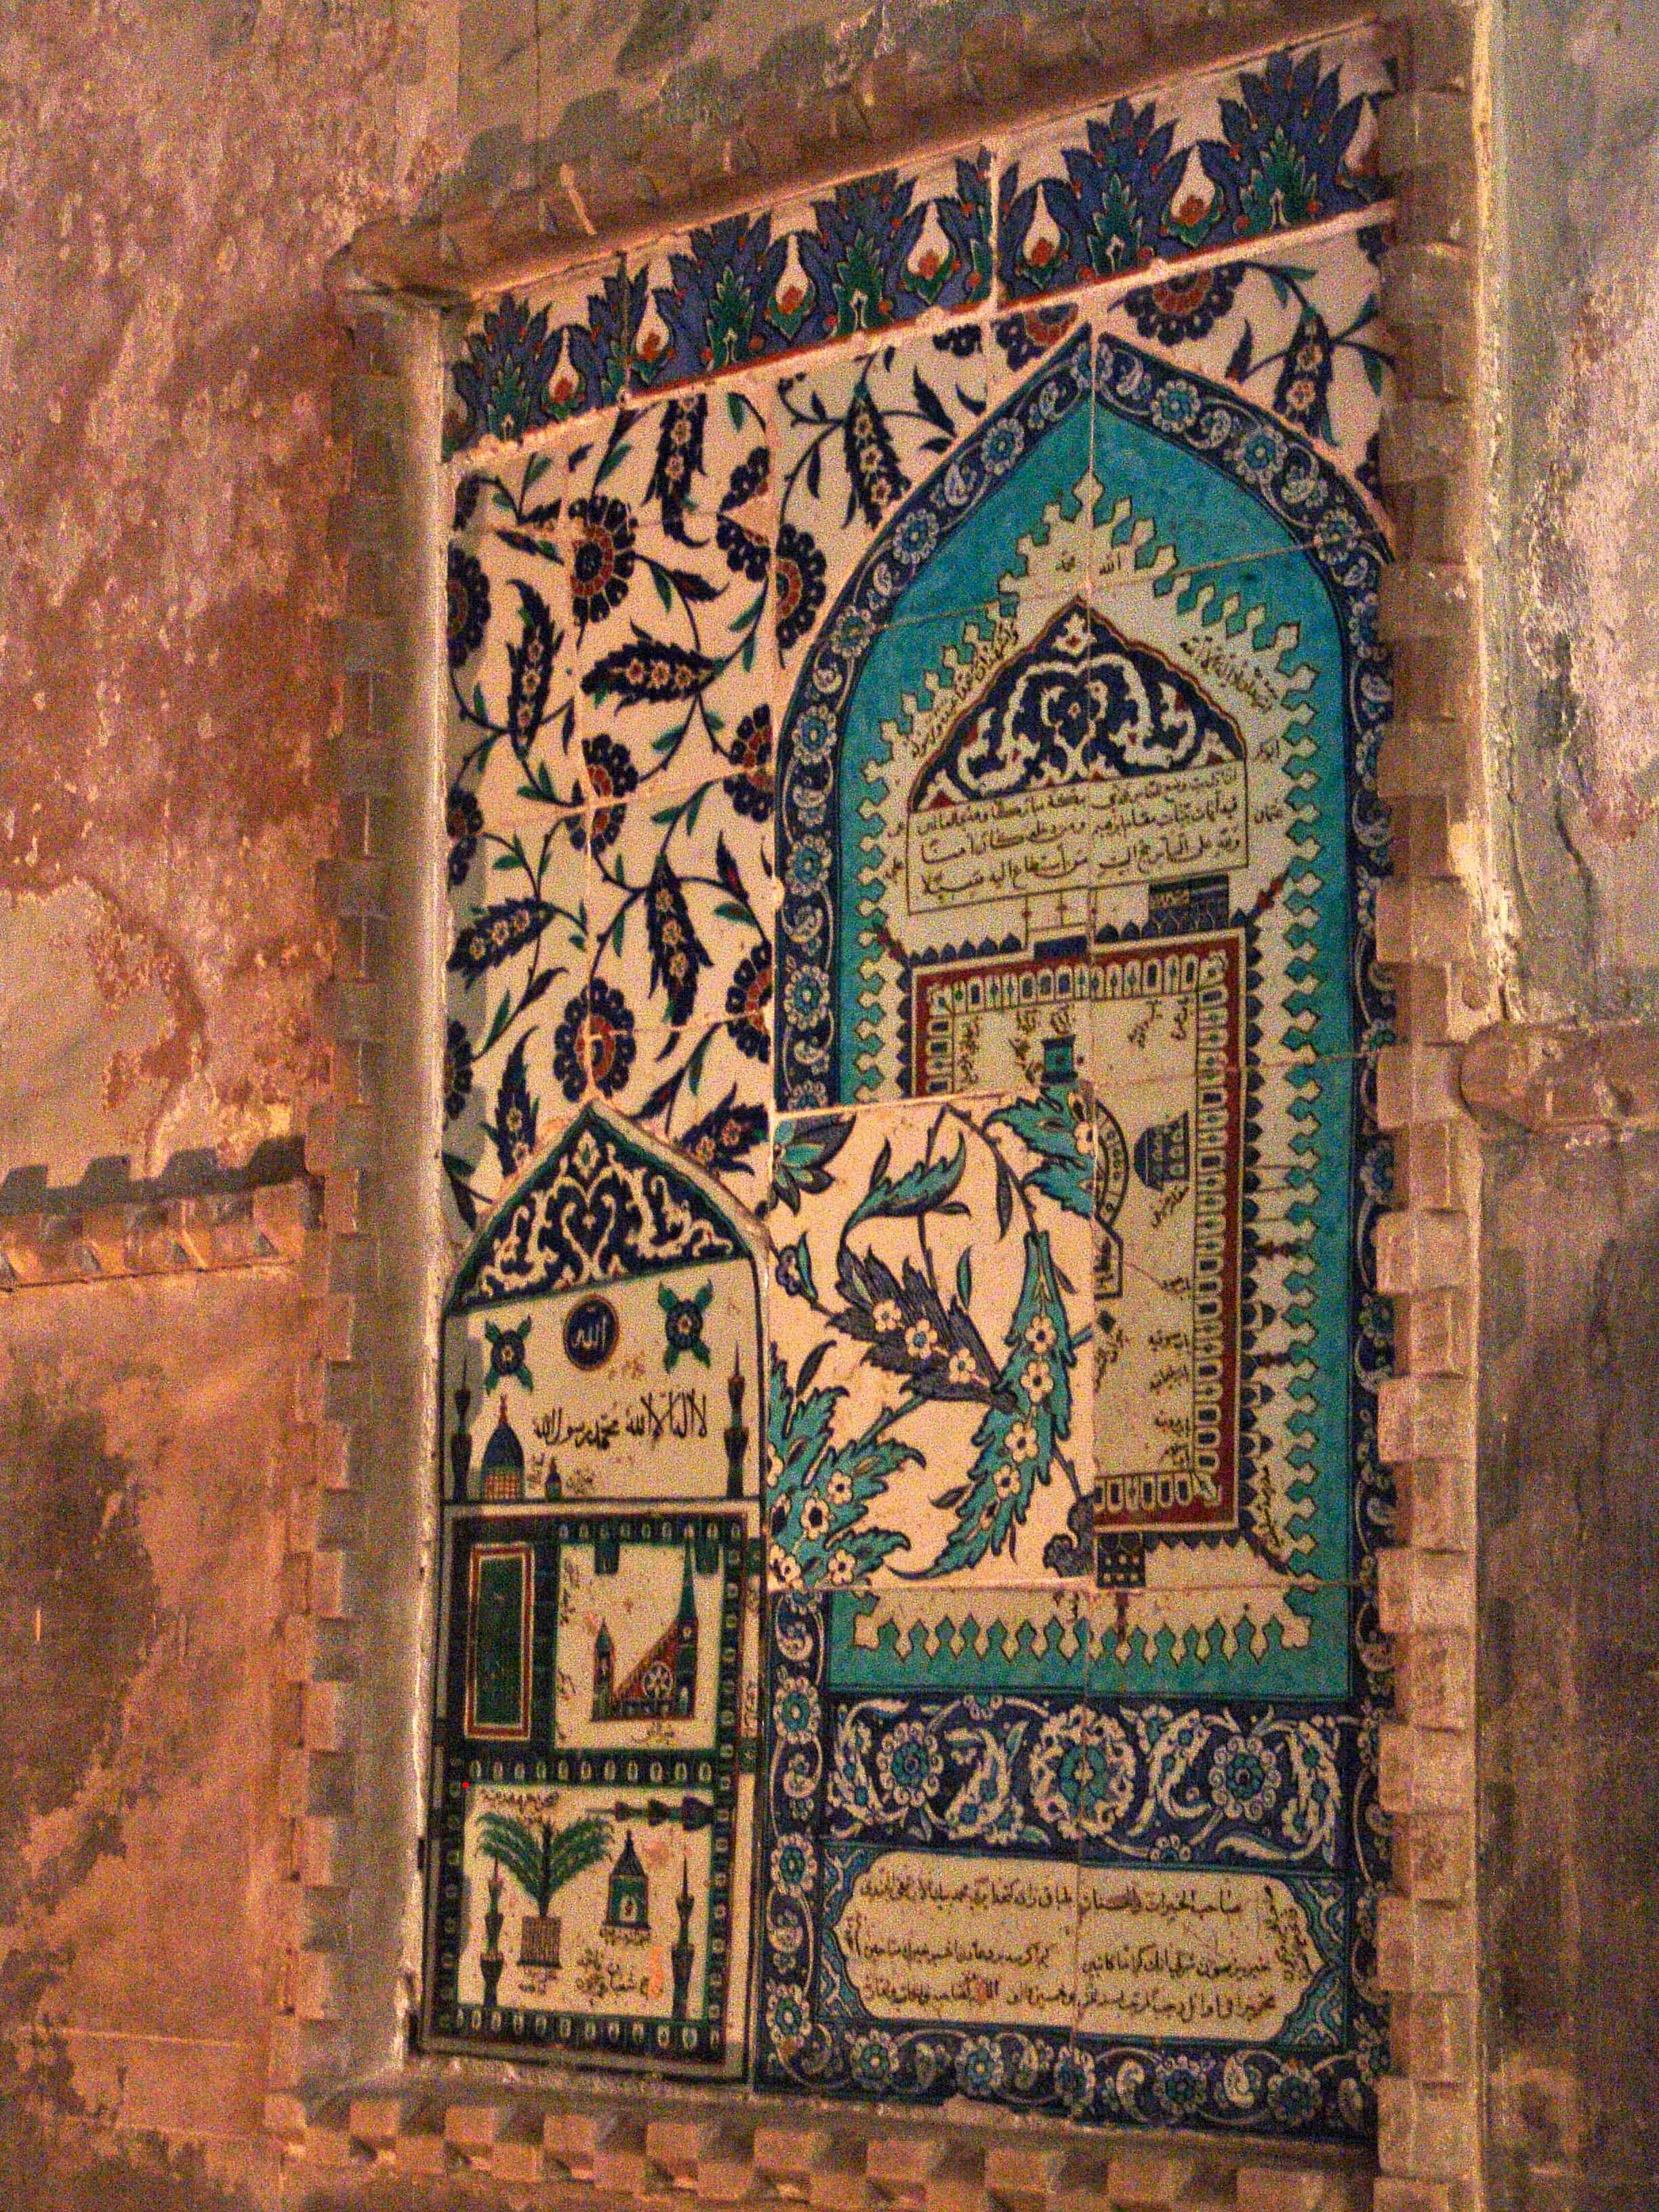 Tile panel at Hagia Sophia in Istanbul, Turkey